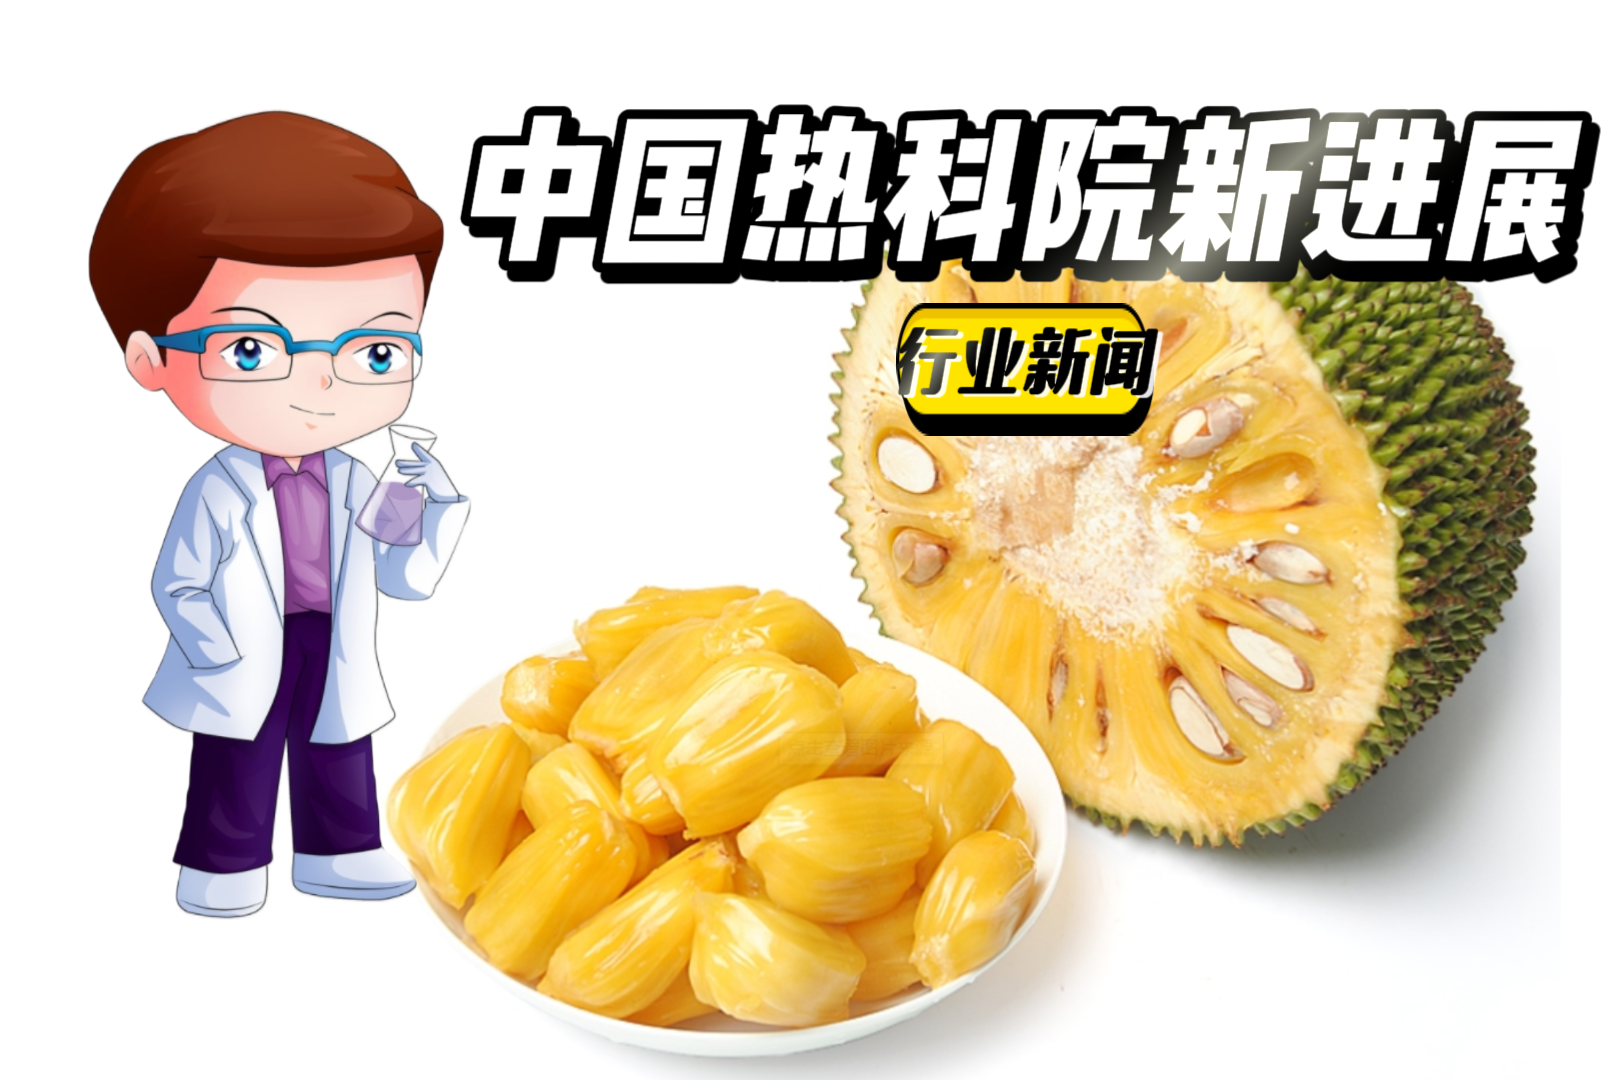 中国热科院在体外模拟胃肠消化中菠萝蜜多酚及抗氧化活性变化方面取得新进展